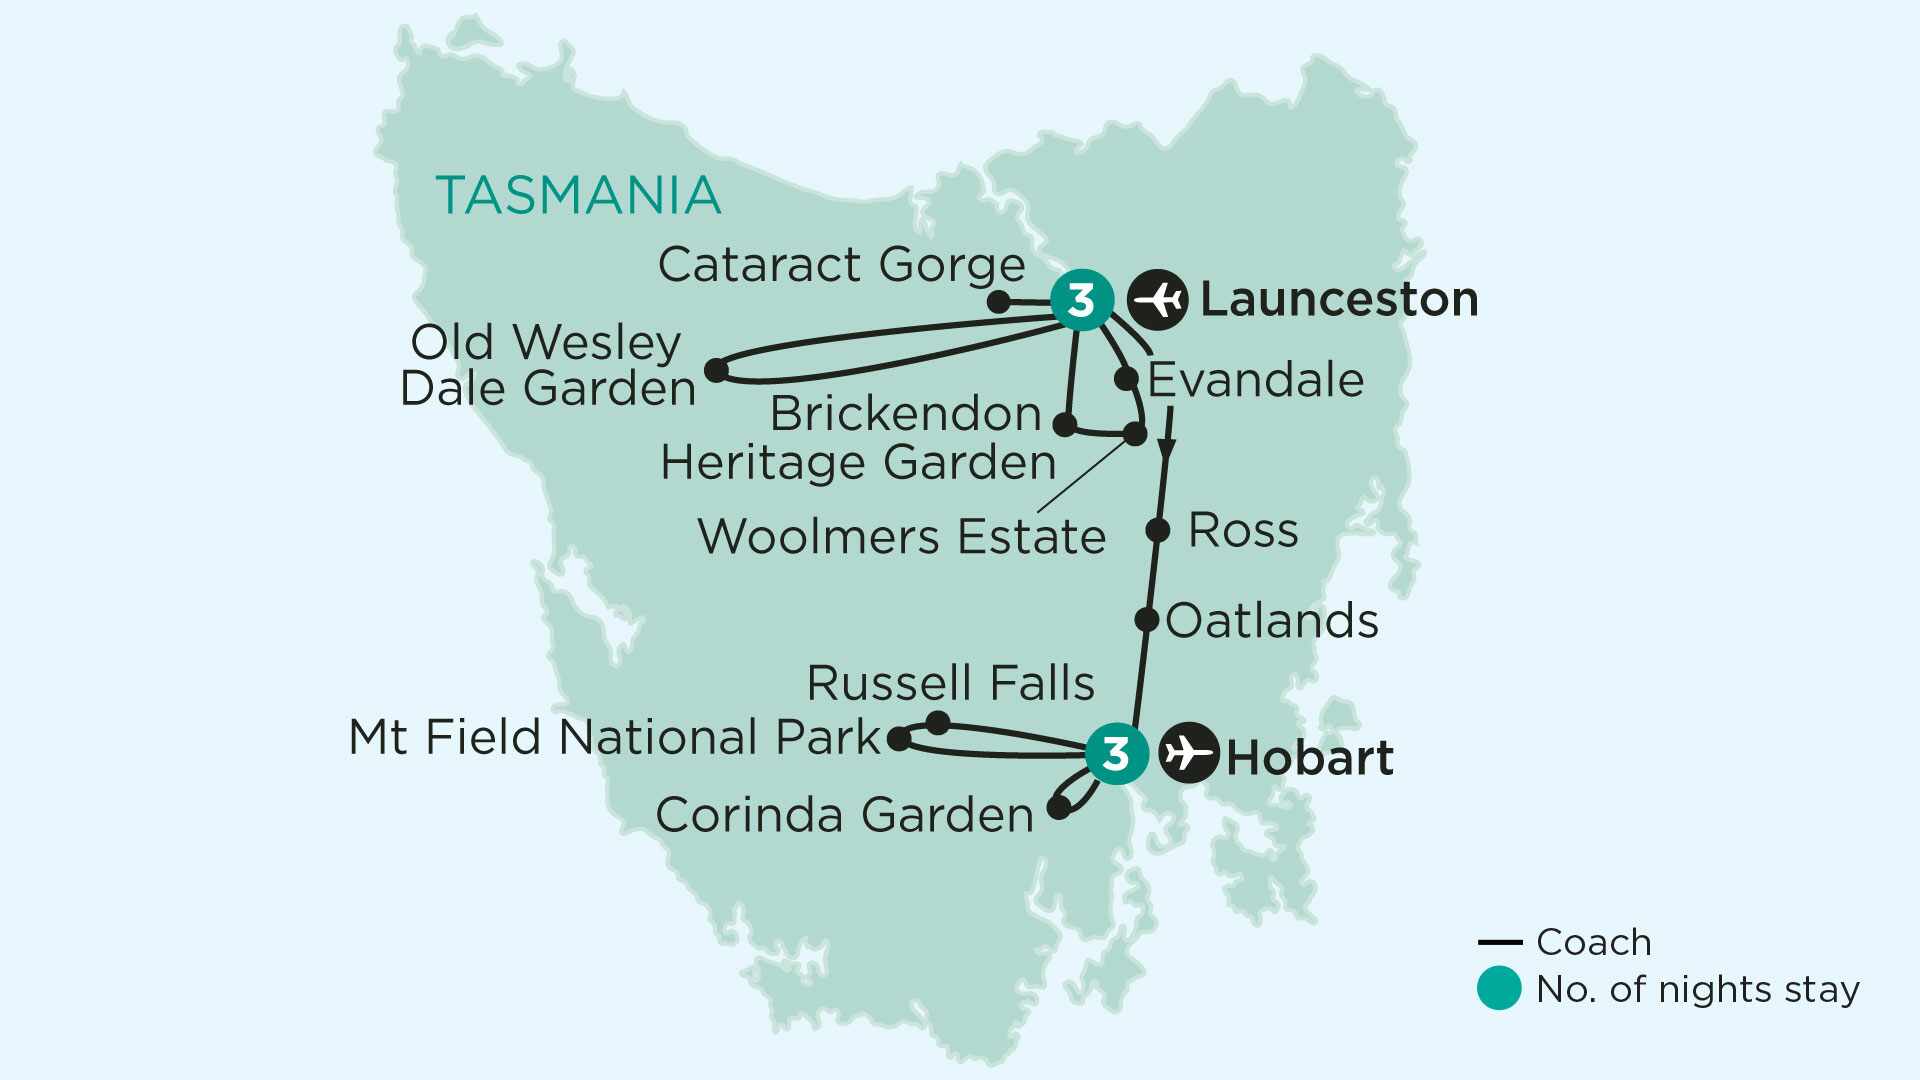 tourhub | APT | Private Gardens, Art & Taste of Tasmania | Tour Map